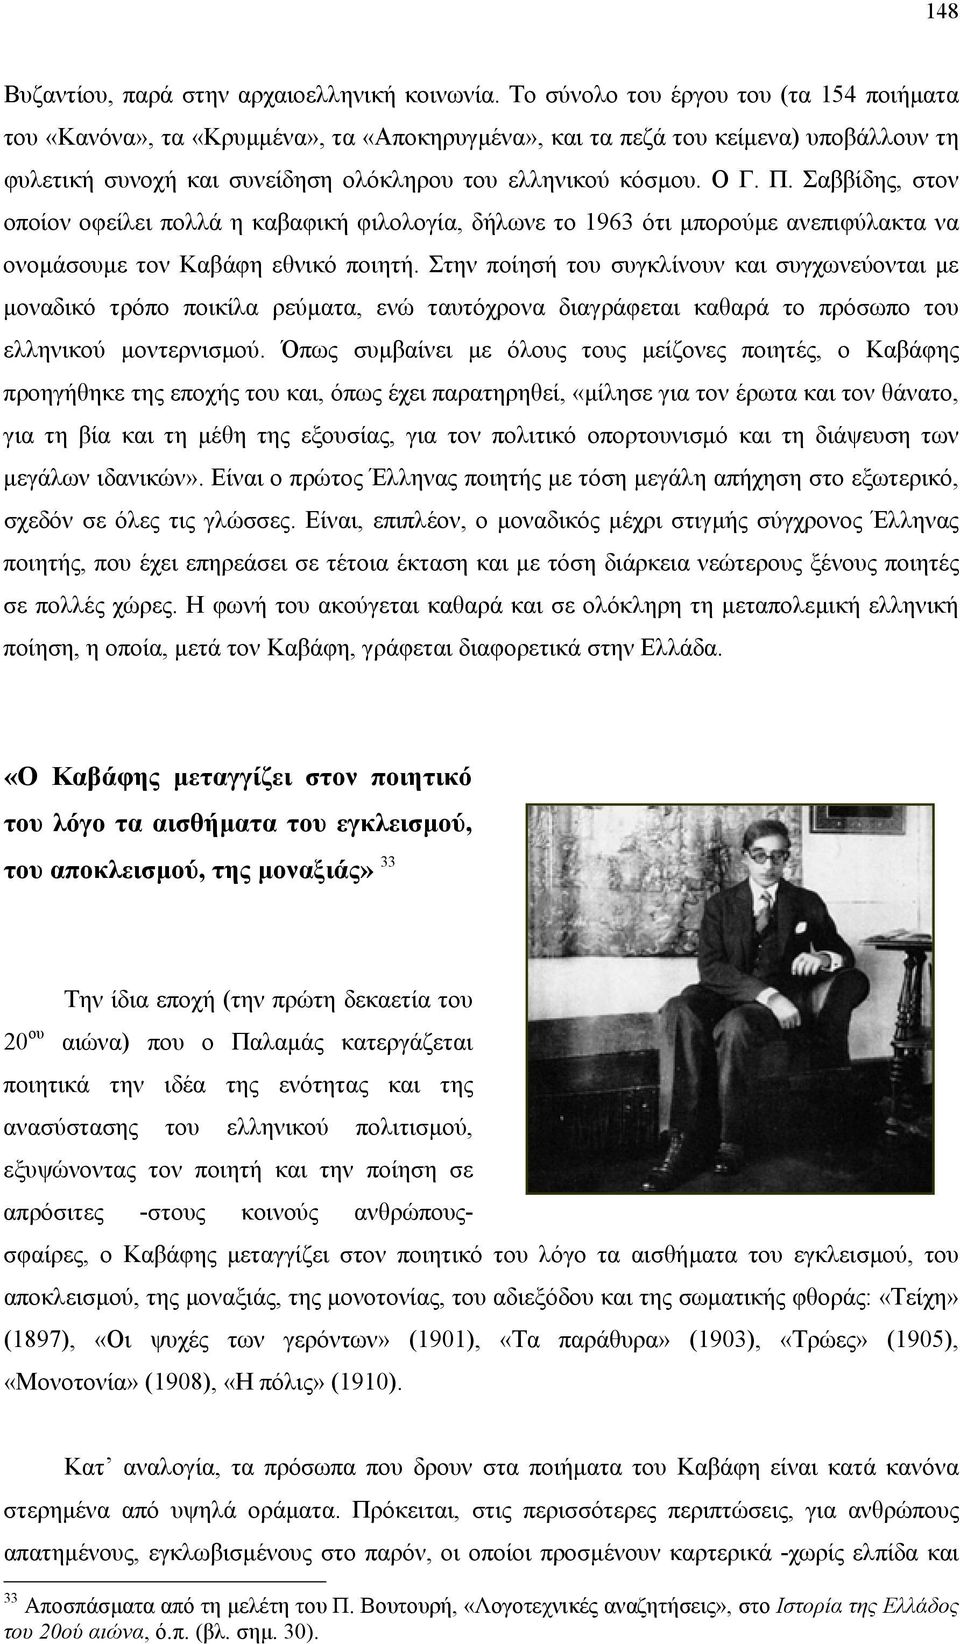 Σαββίδης, στον οποίον οφείλει πολλά η καβαφική φιλολογία, δήλωνε το 1963 ότι µπορούµε ανεπιφύλακτα να ονοµάσουµε τον Καβάφη εθνικό ποιητή.